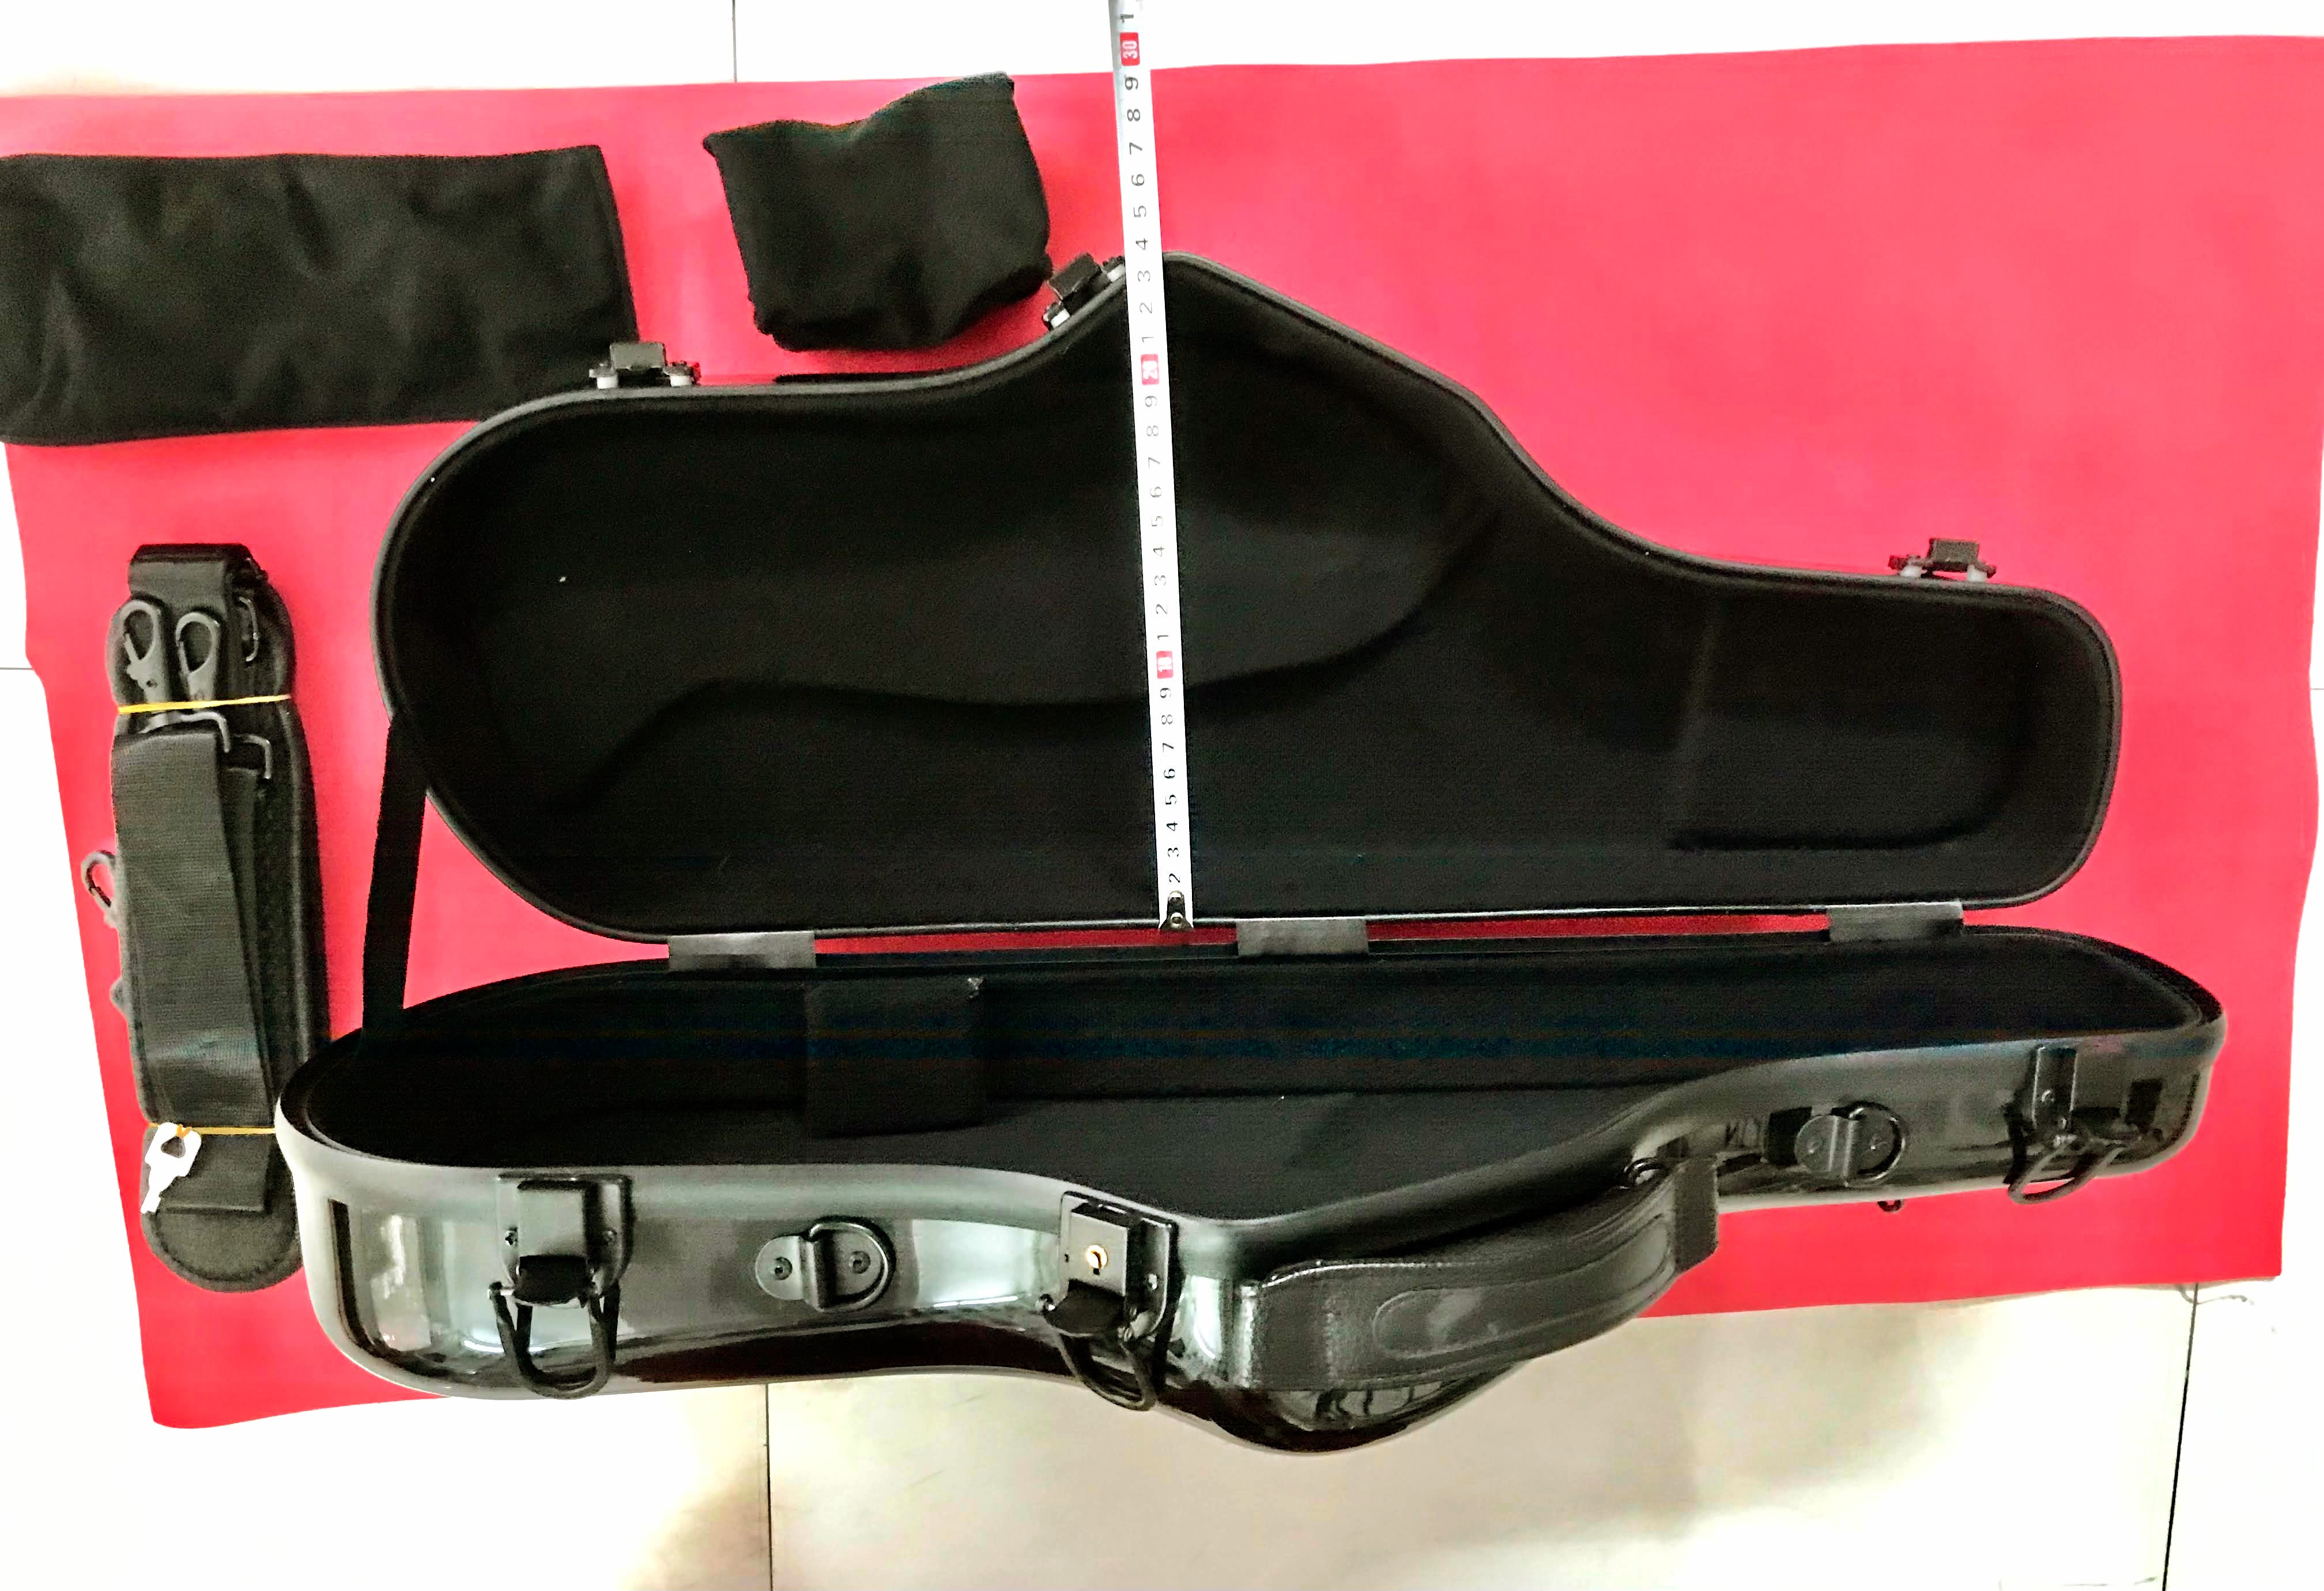 Hộp Đựng Kèn Saxophone Alto Case - Mới 100%- Chất liệu ABS - Chống va đập, có khóa, có 2 dây đeo, Nhạc Cụ Tùng Linh